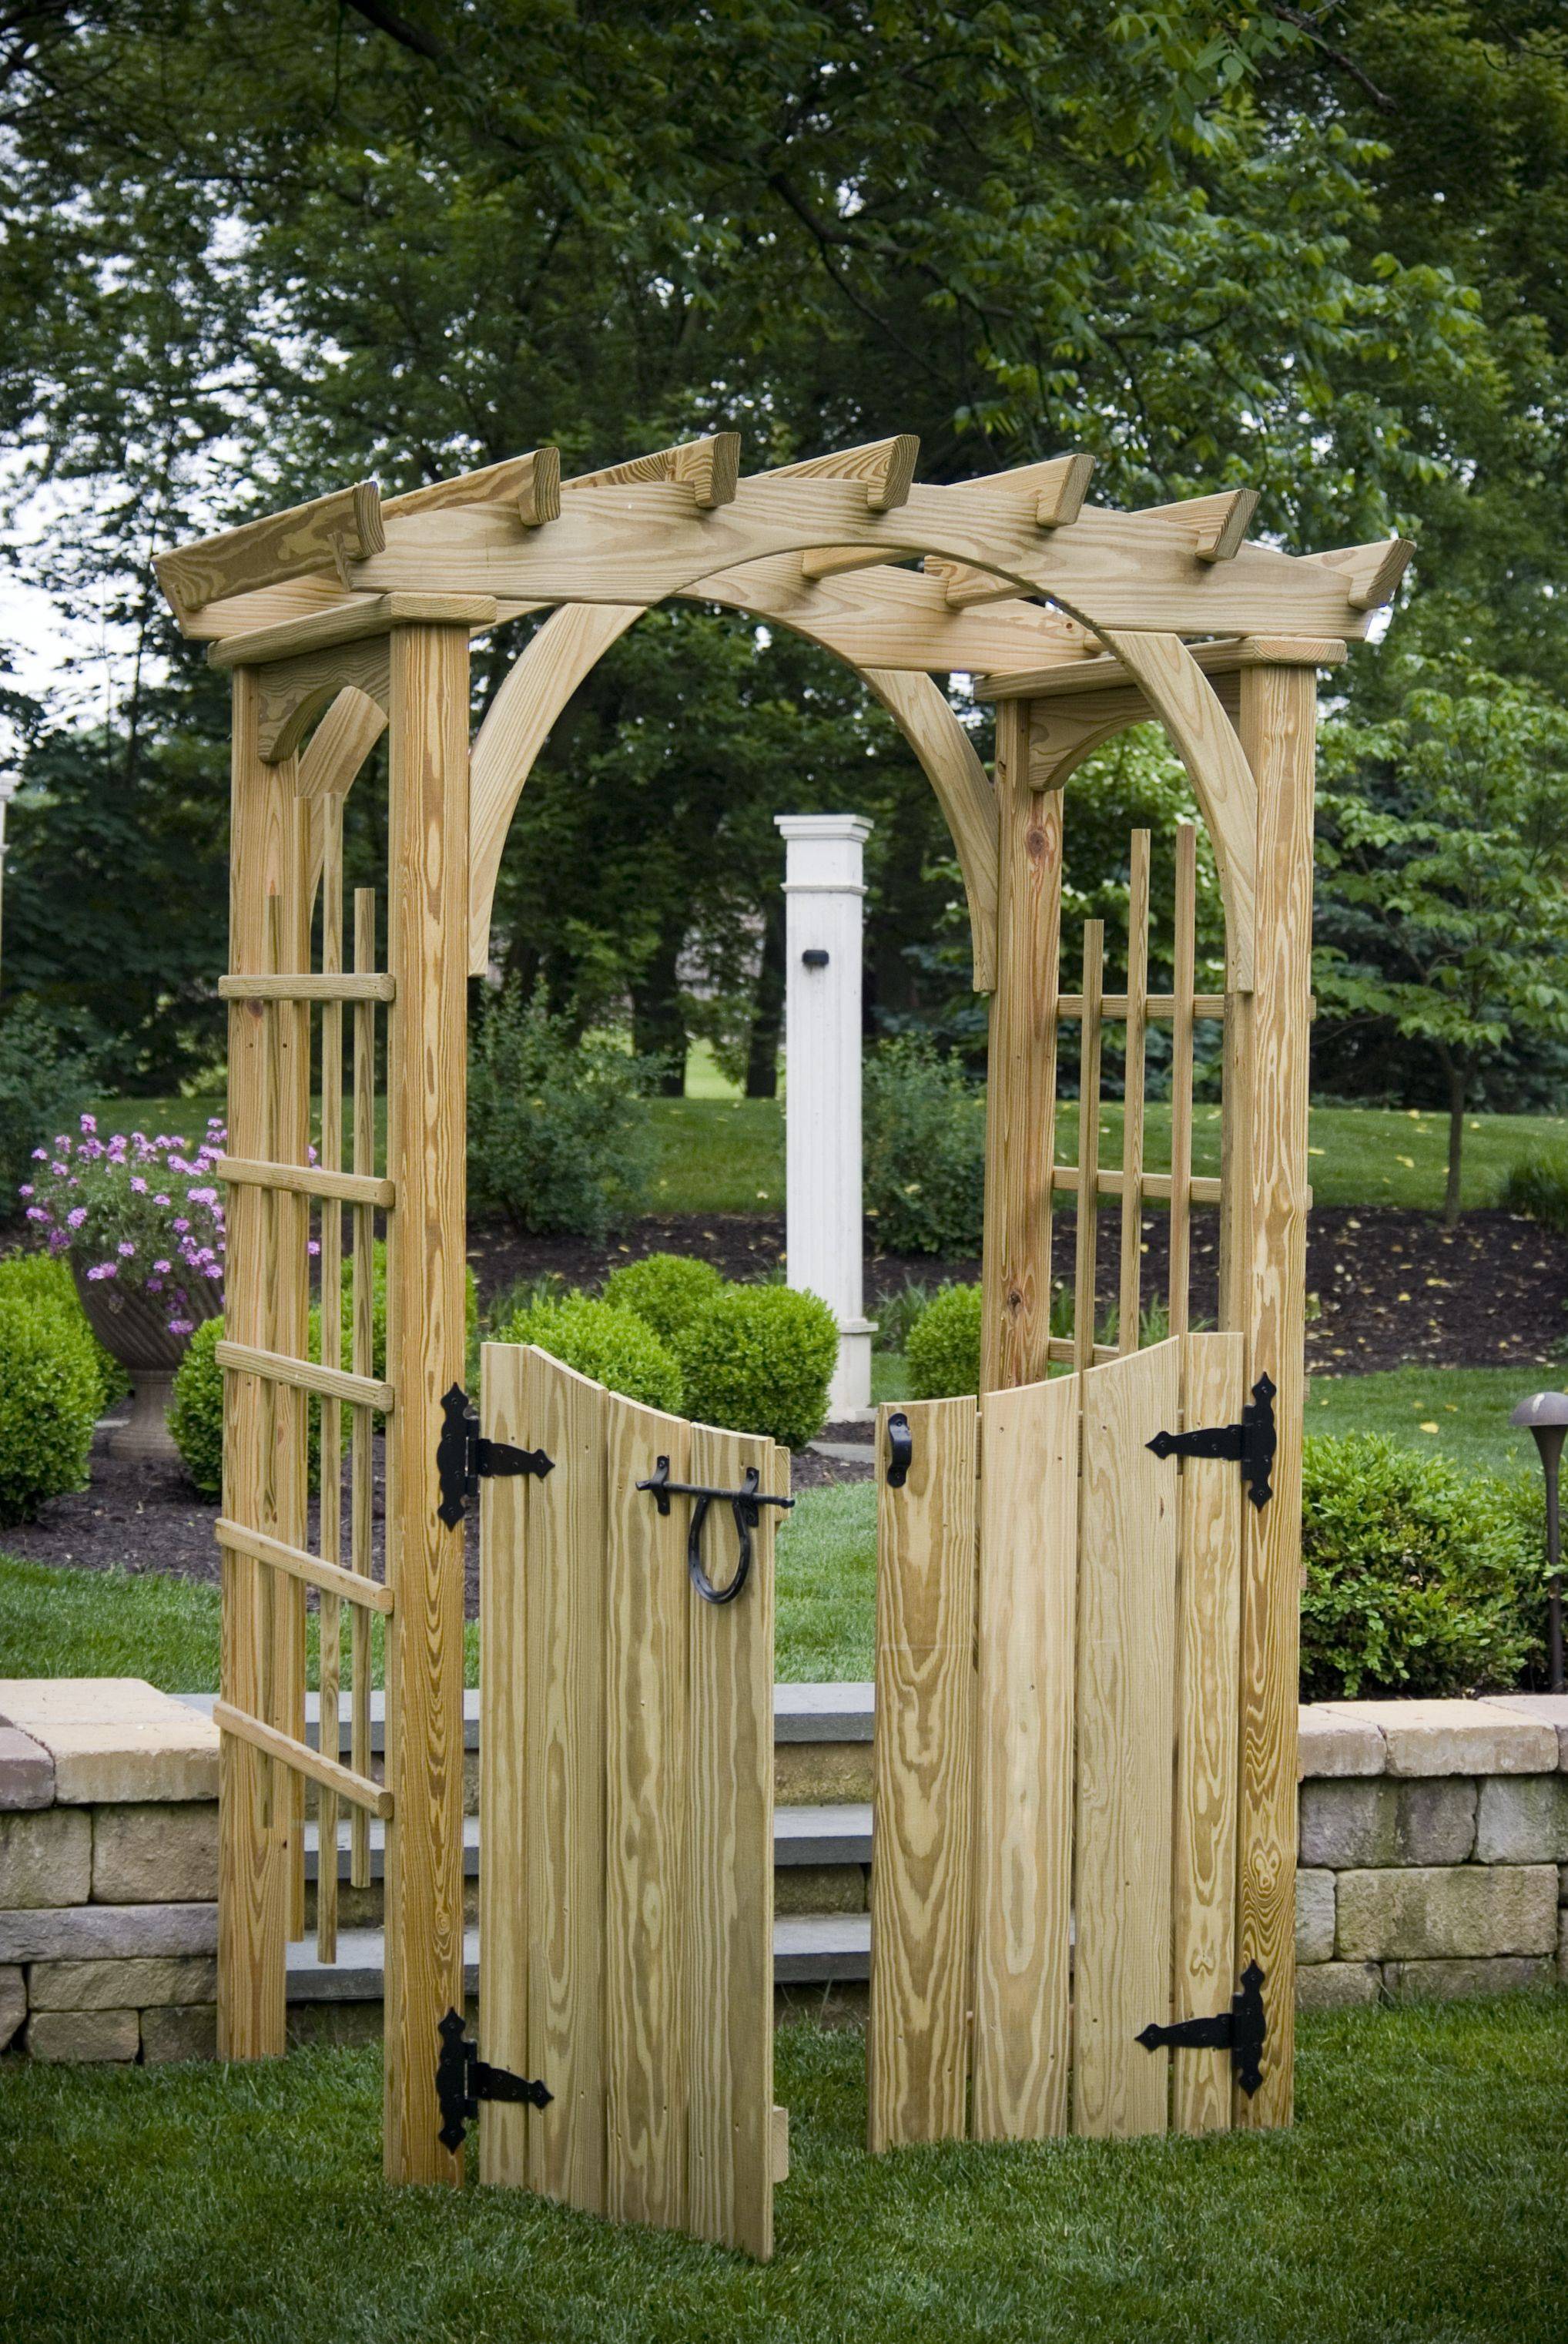 Wooden Garden Arch Ideas Home Decor And Garden Ideas Garden